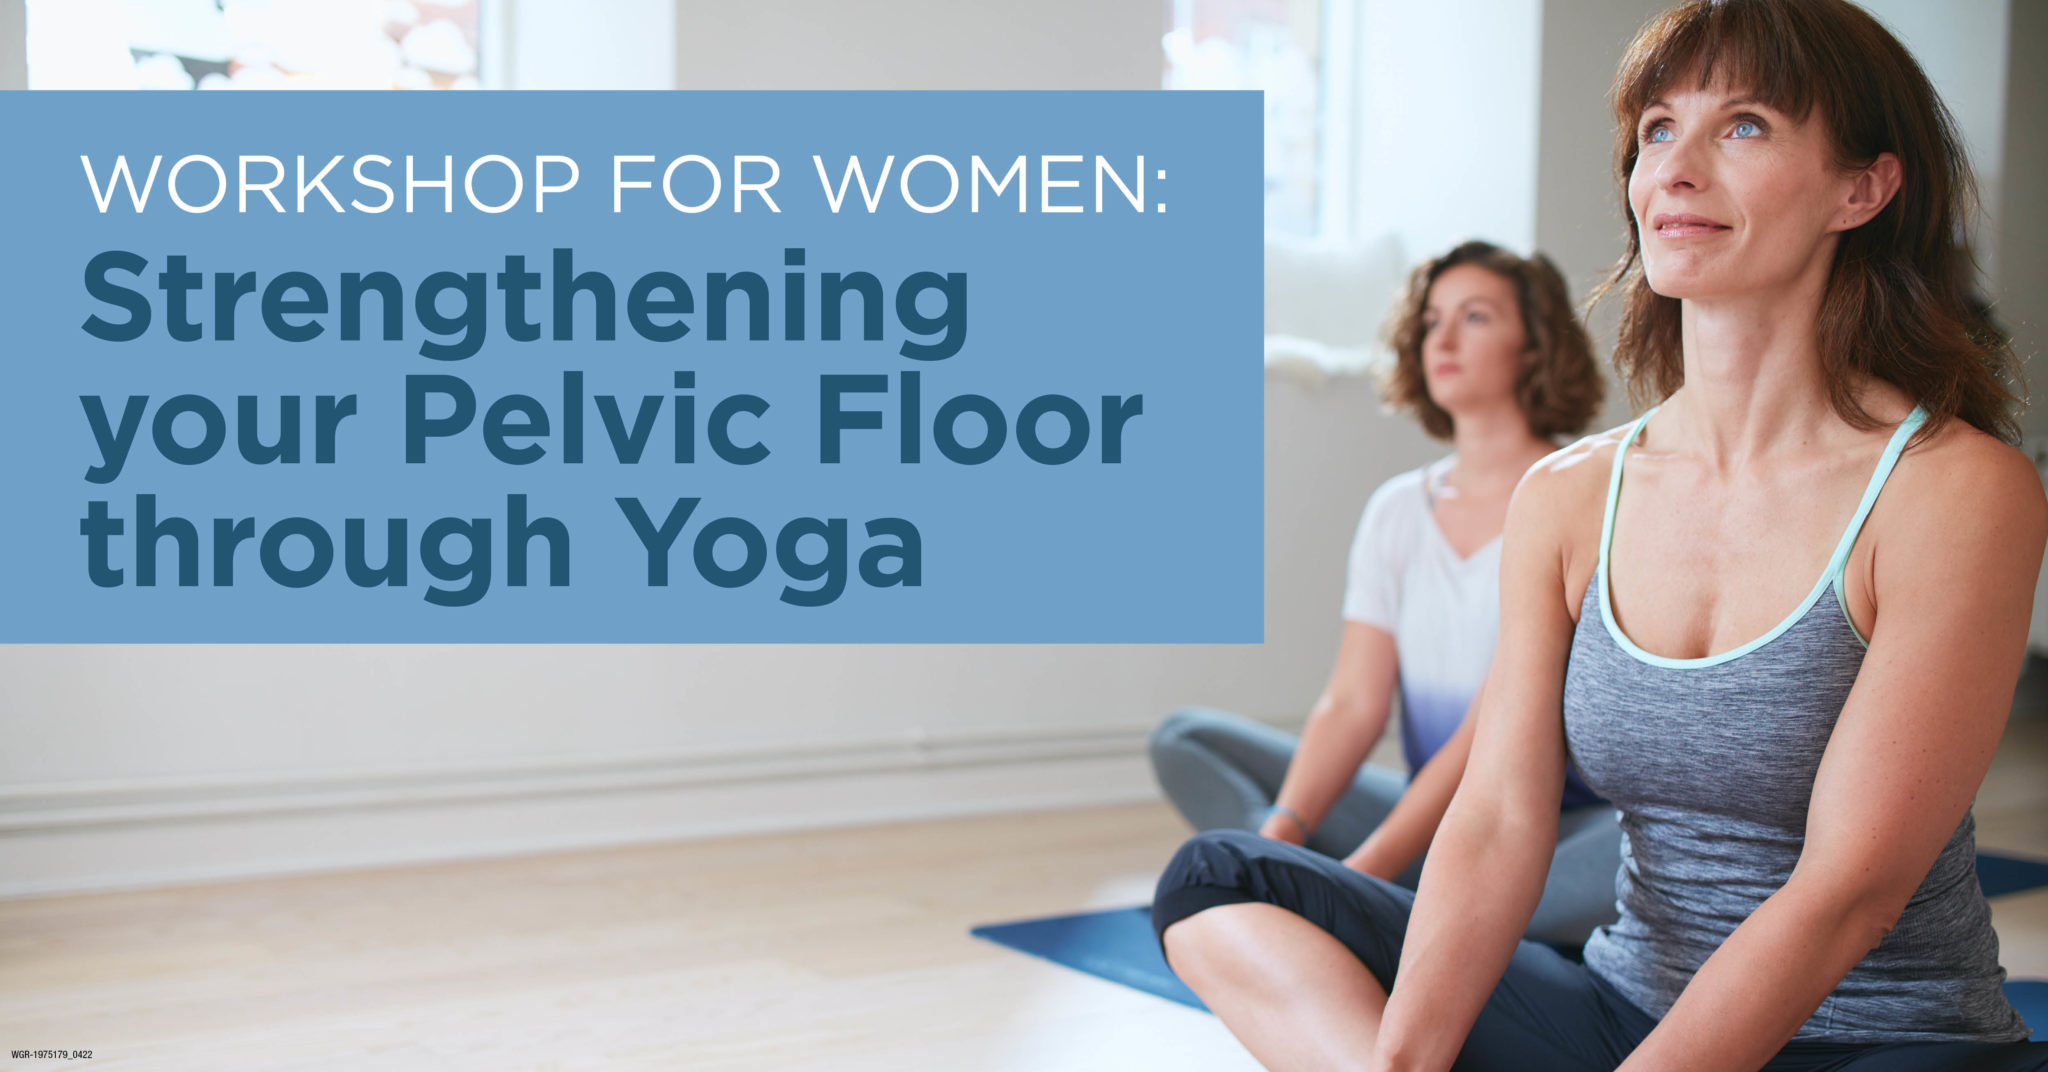 Workshop for Women: Strengthening your Pelvic Floor through Yoga